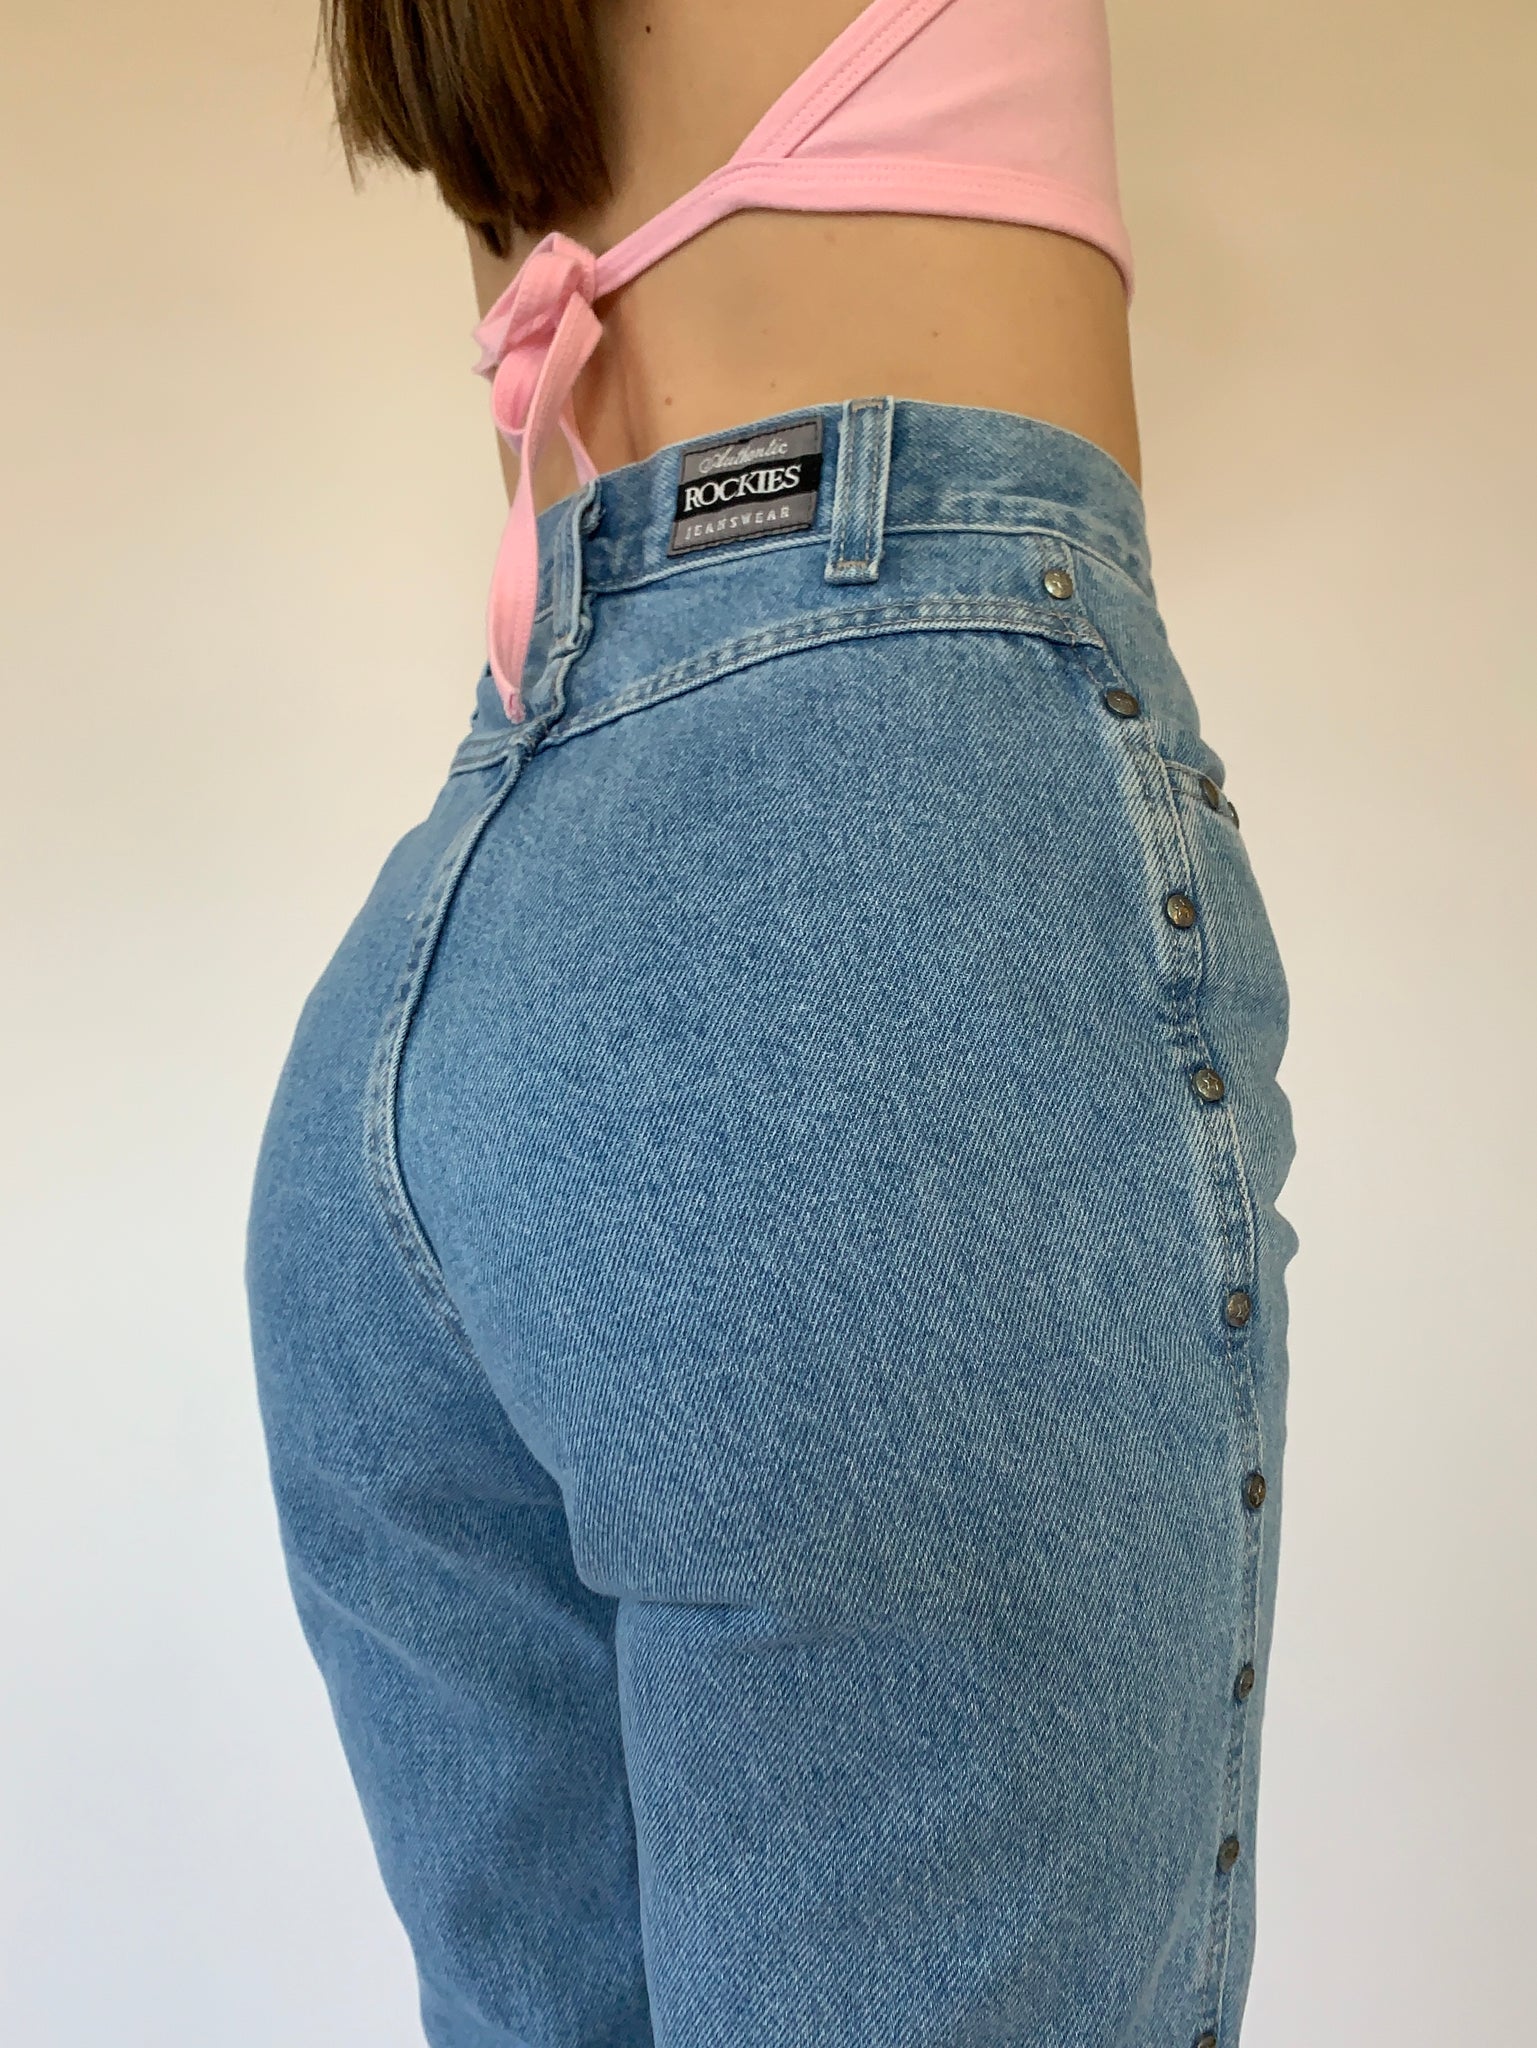 Vintage Rockies Jeans – Hazy Vintage